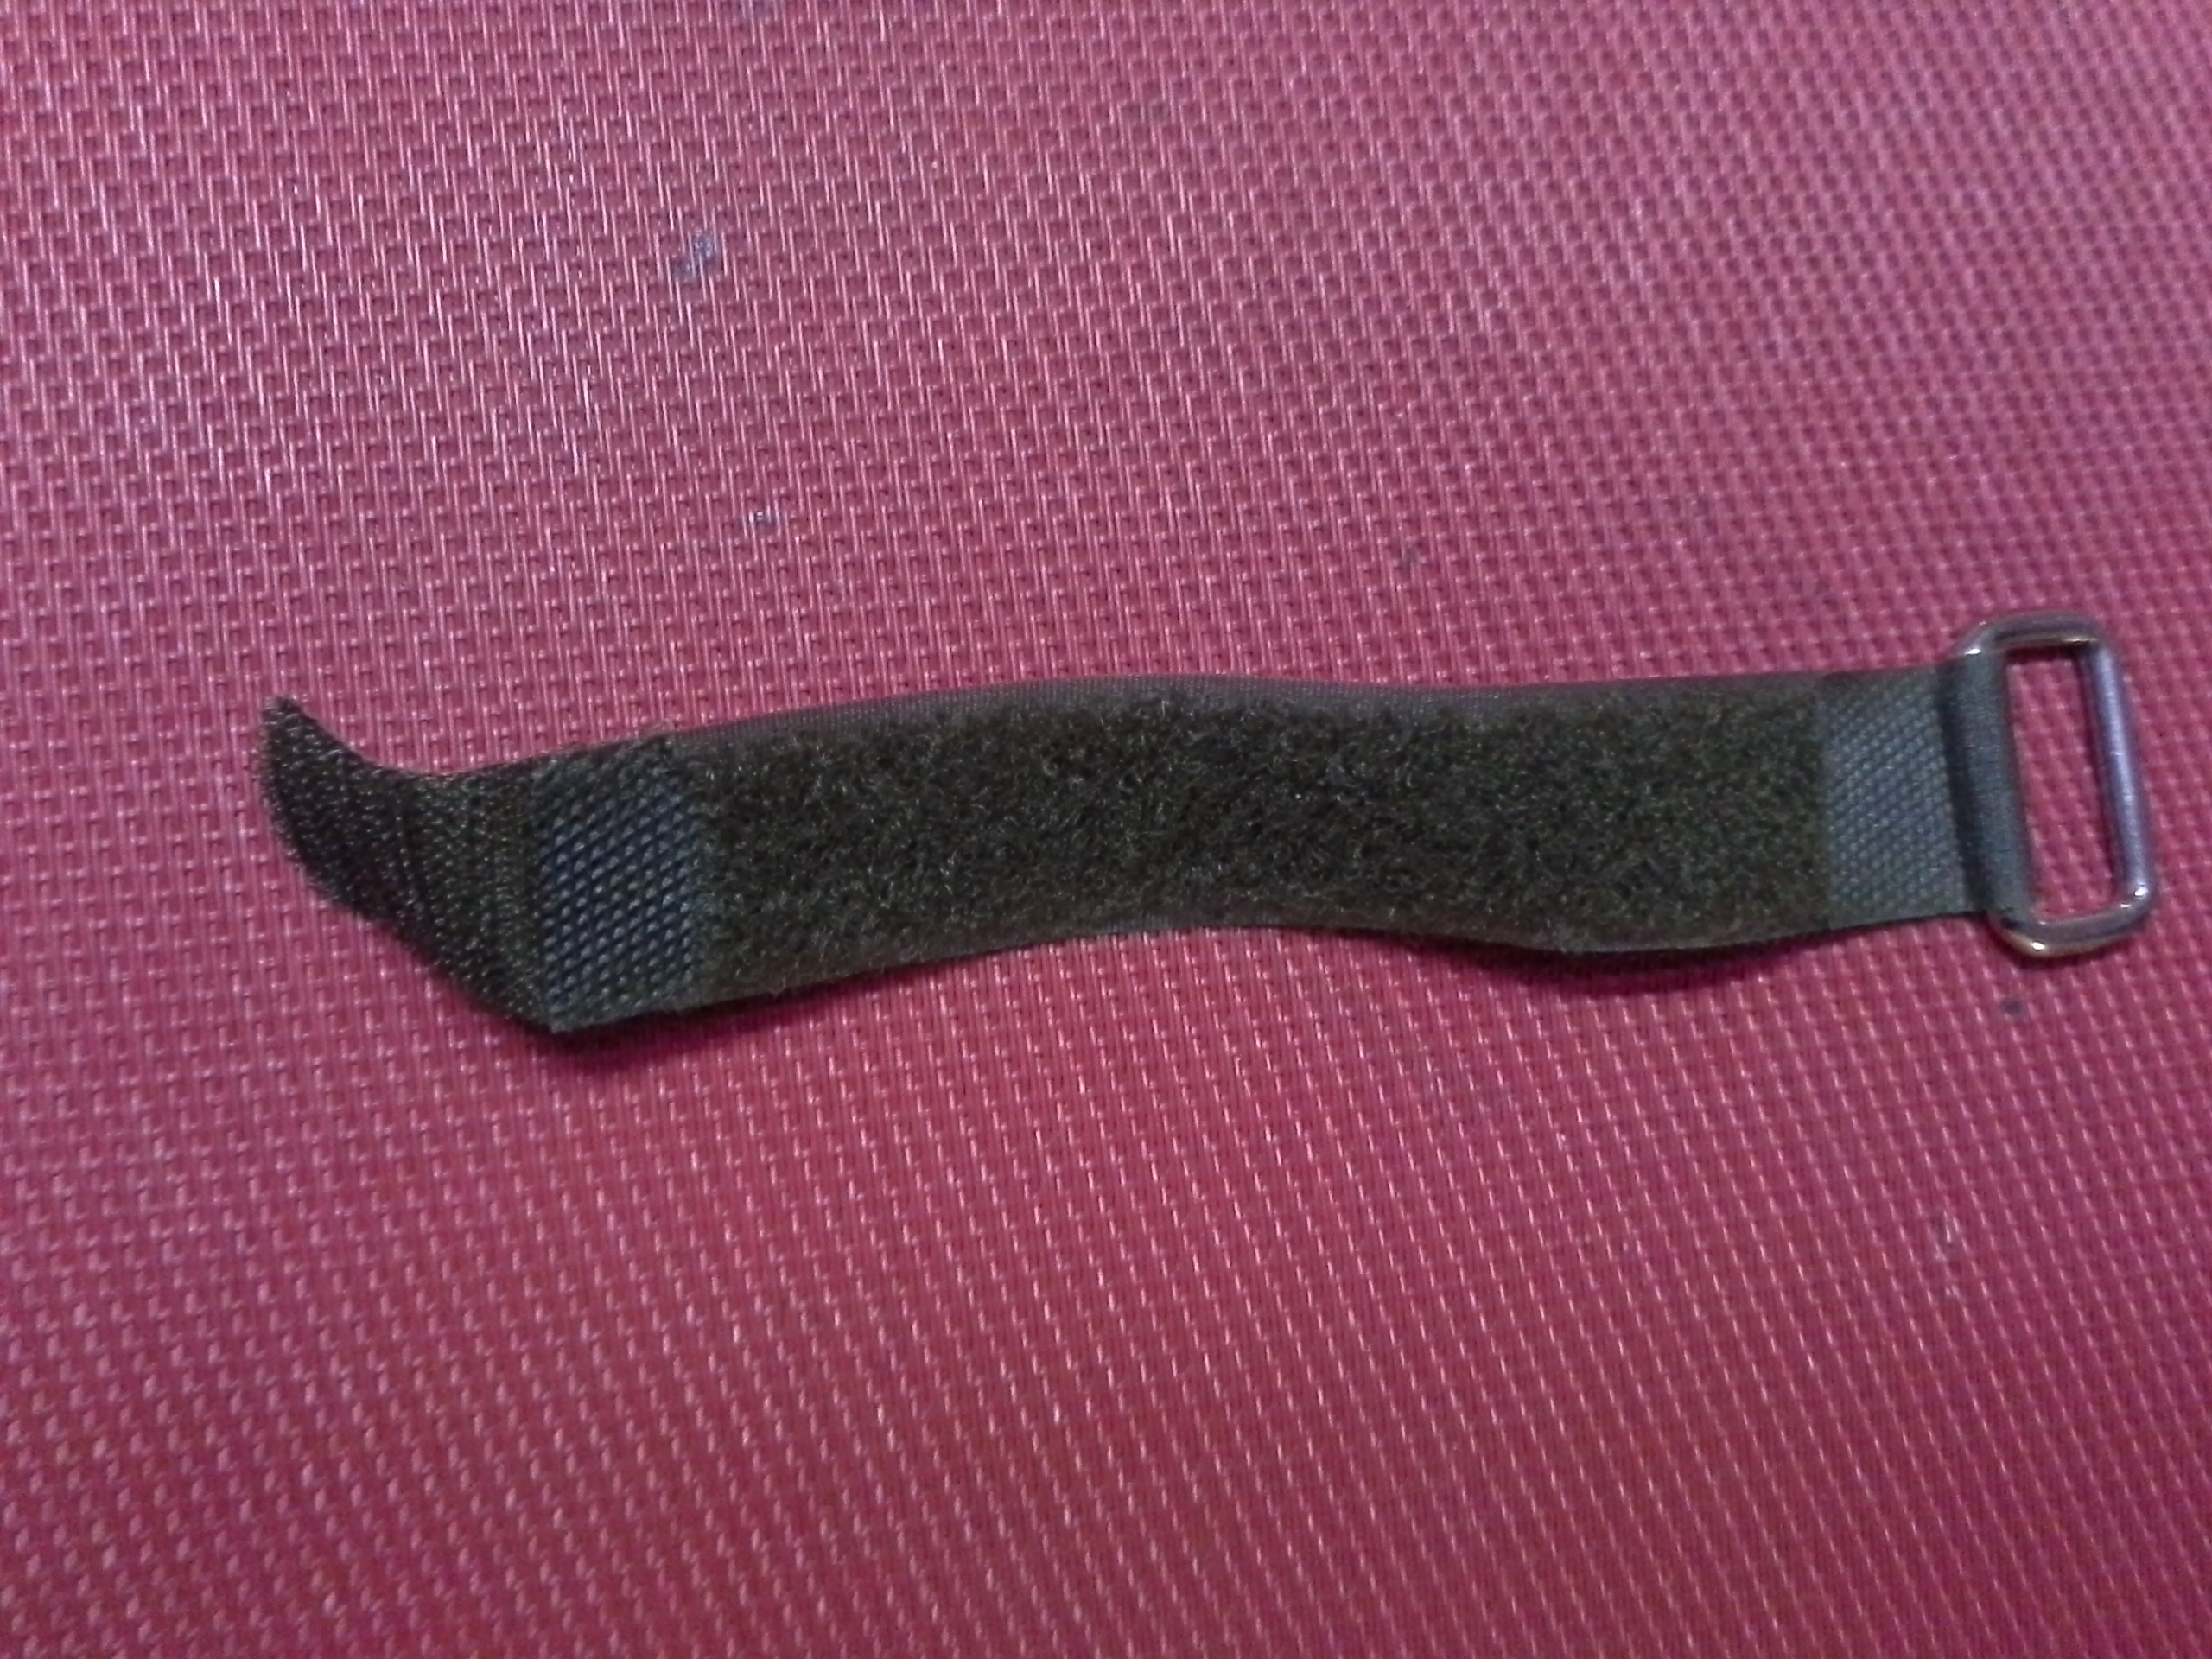 Packriemen - Klettverschluß 15 cm lang - 2 cm breit